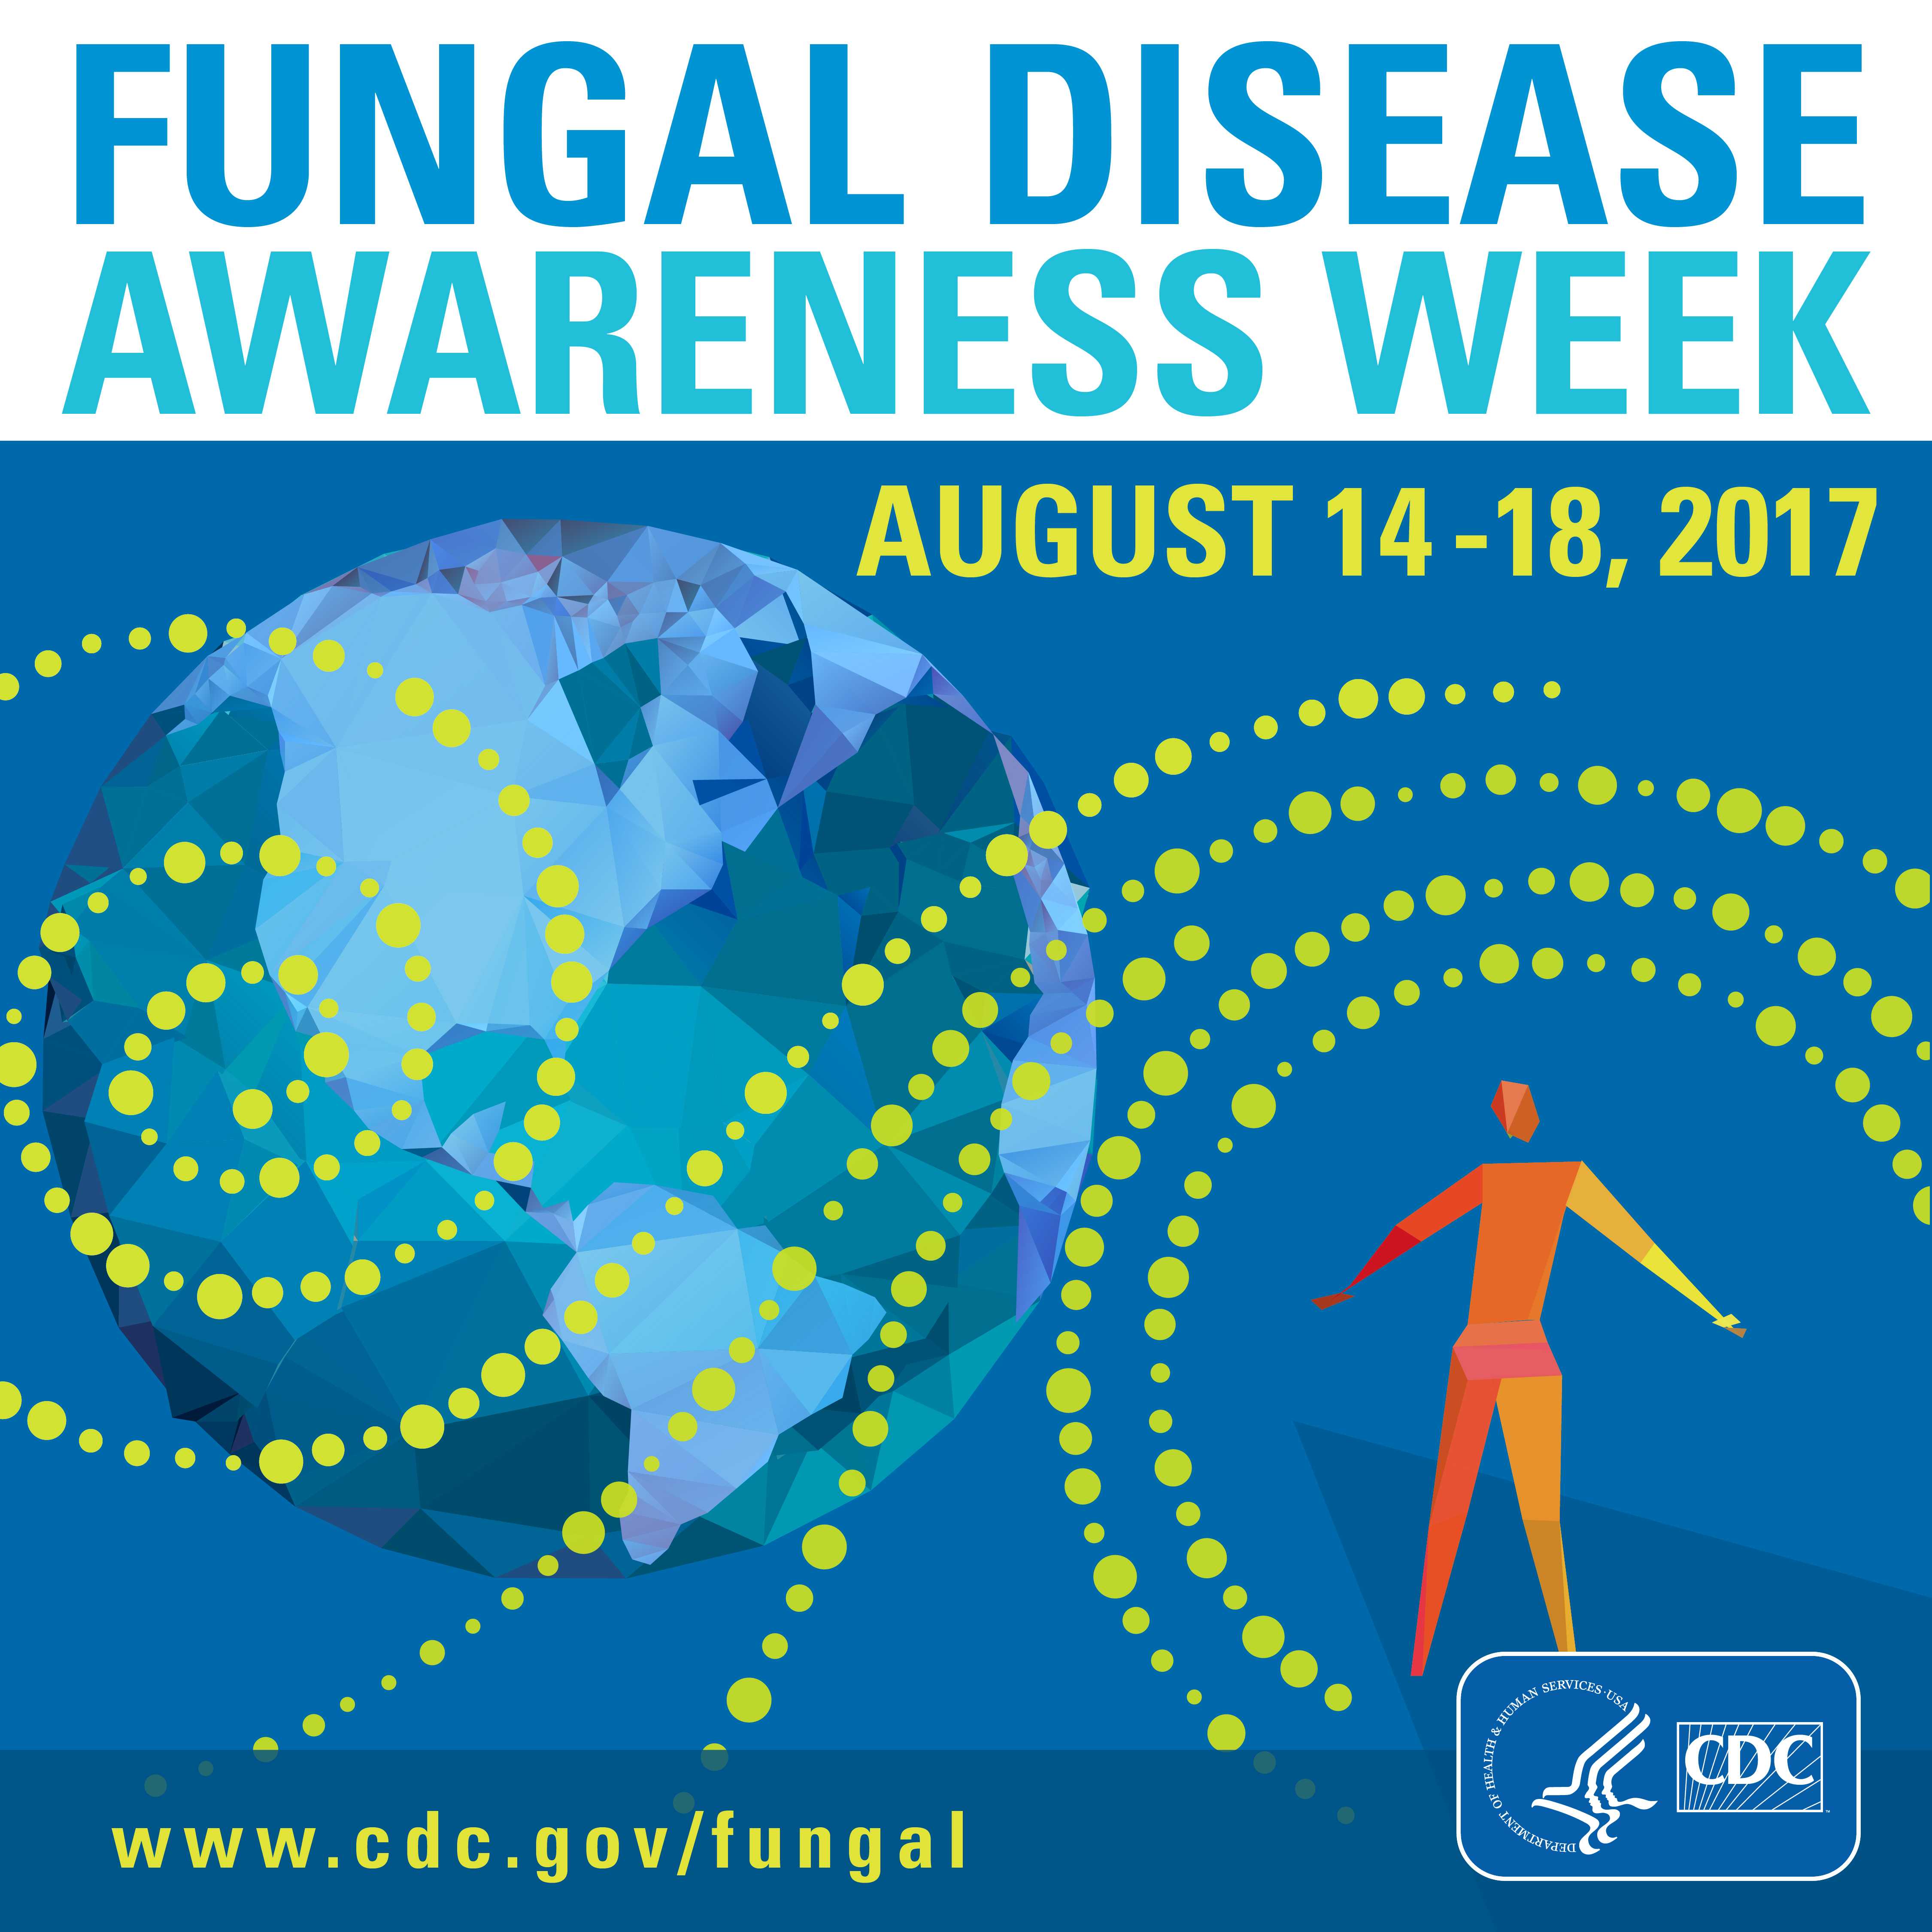 Fungal Disease Awareness Week August 14-18, 2017